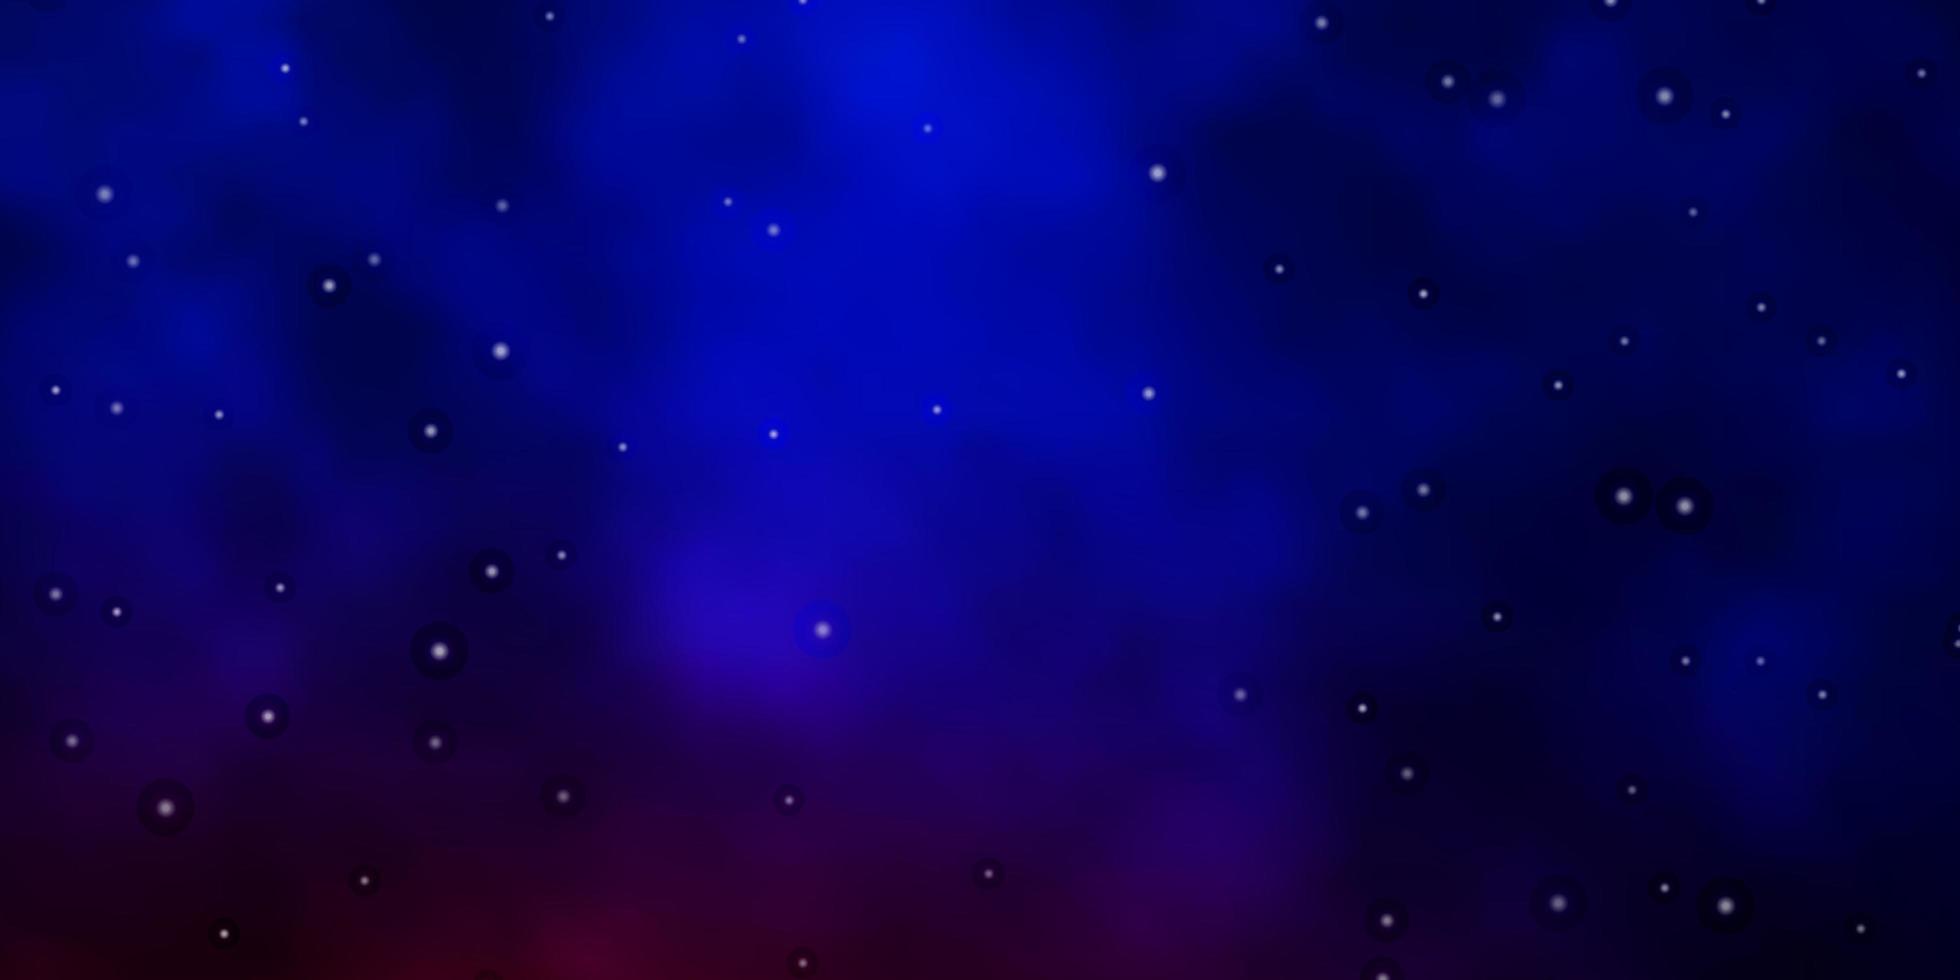 donkerblauwe, rode vectortextuur met prachtige sterren. vector